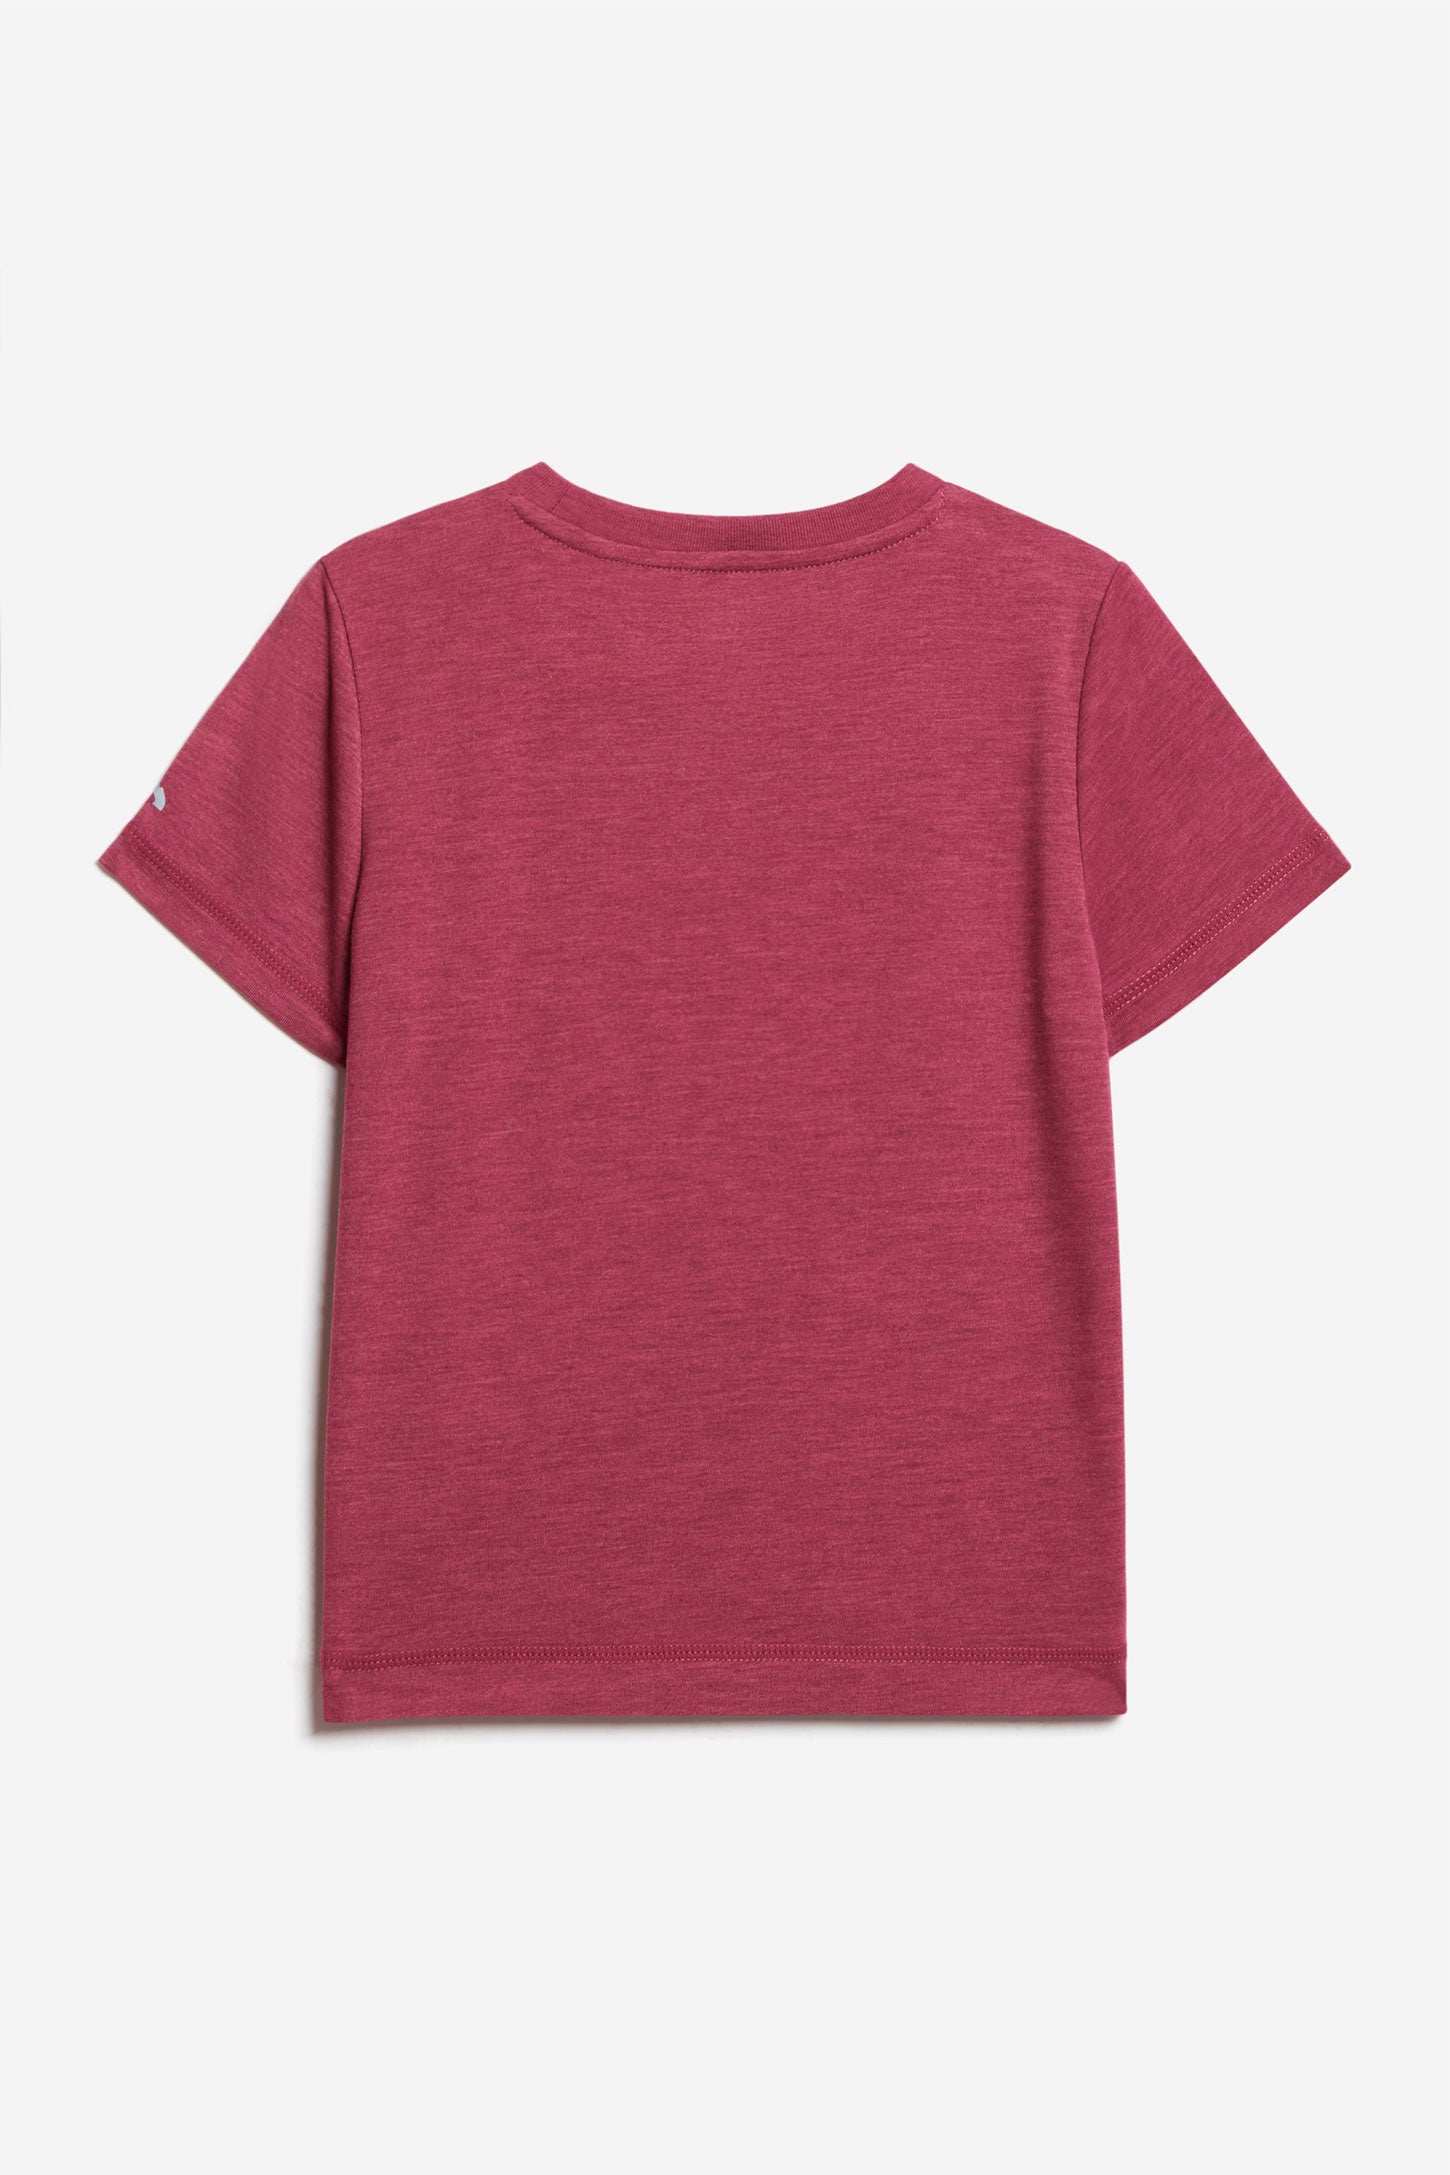 T-shirt imprimé BM - Enfant fille && ROSE